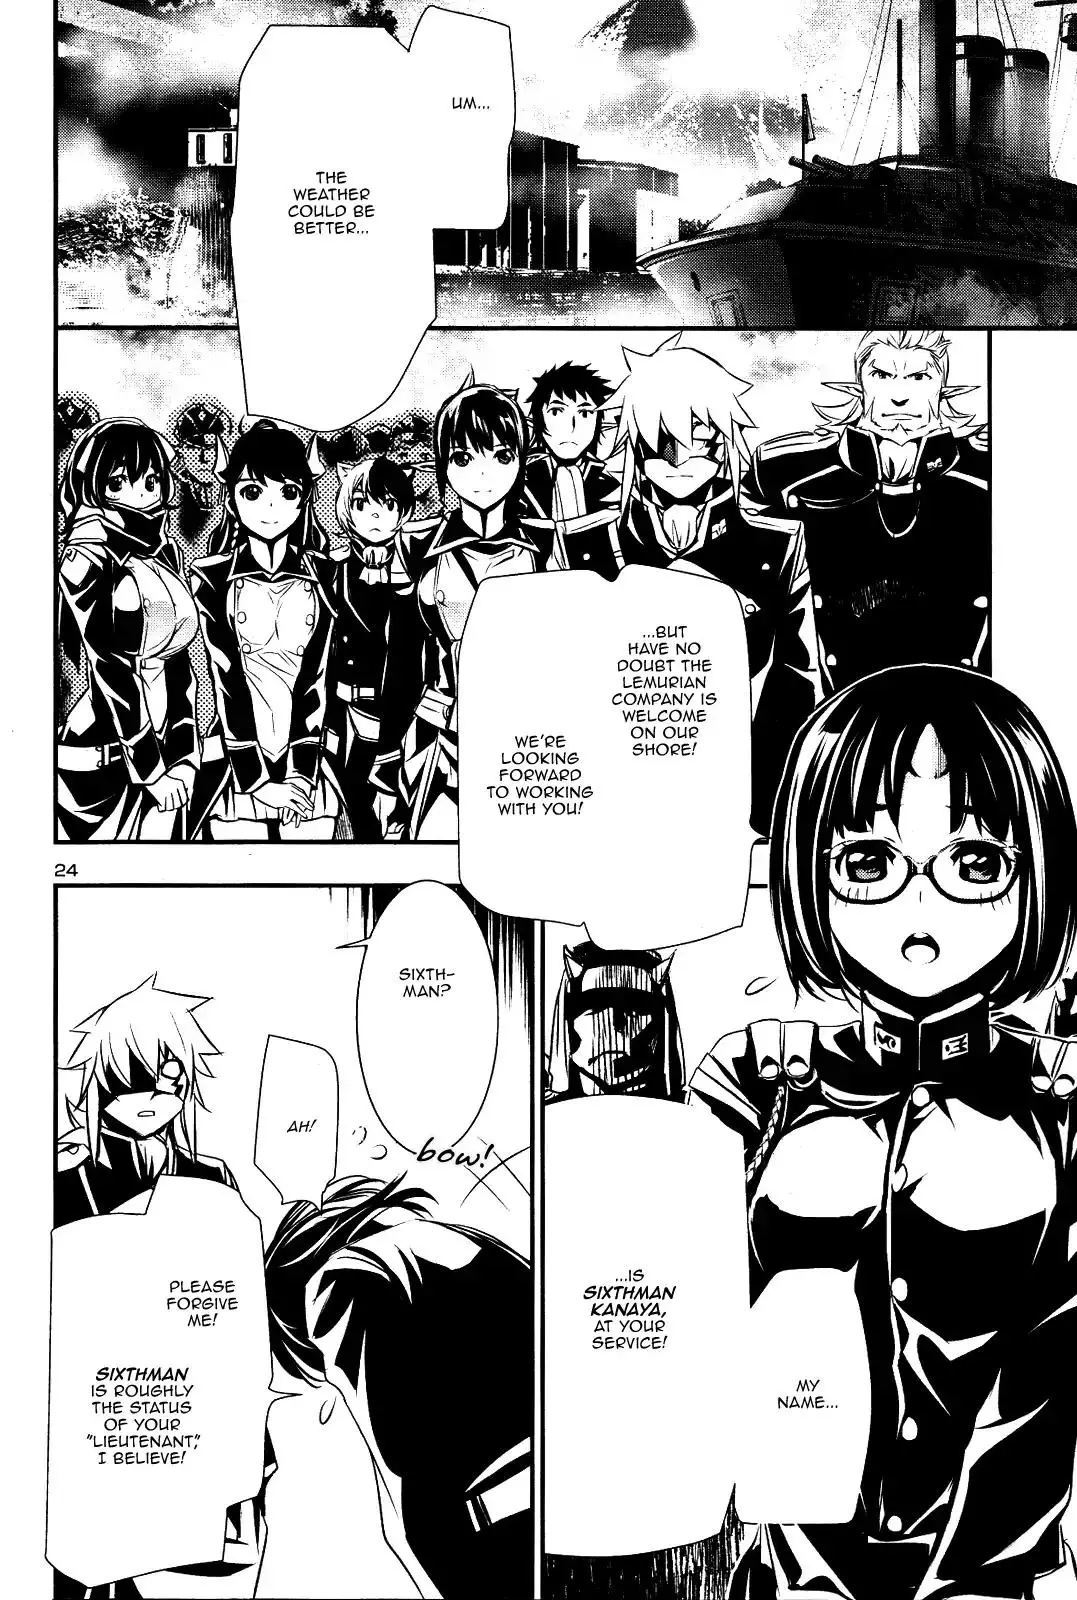 Shinju no Nectar - 22 page 22